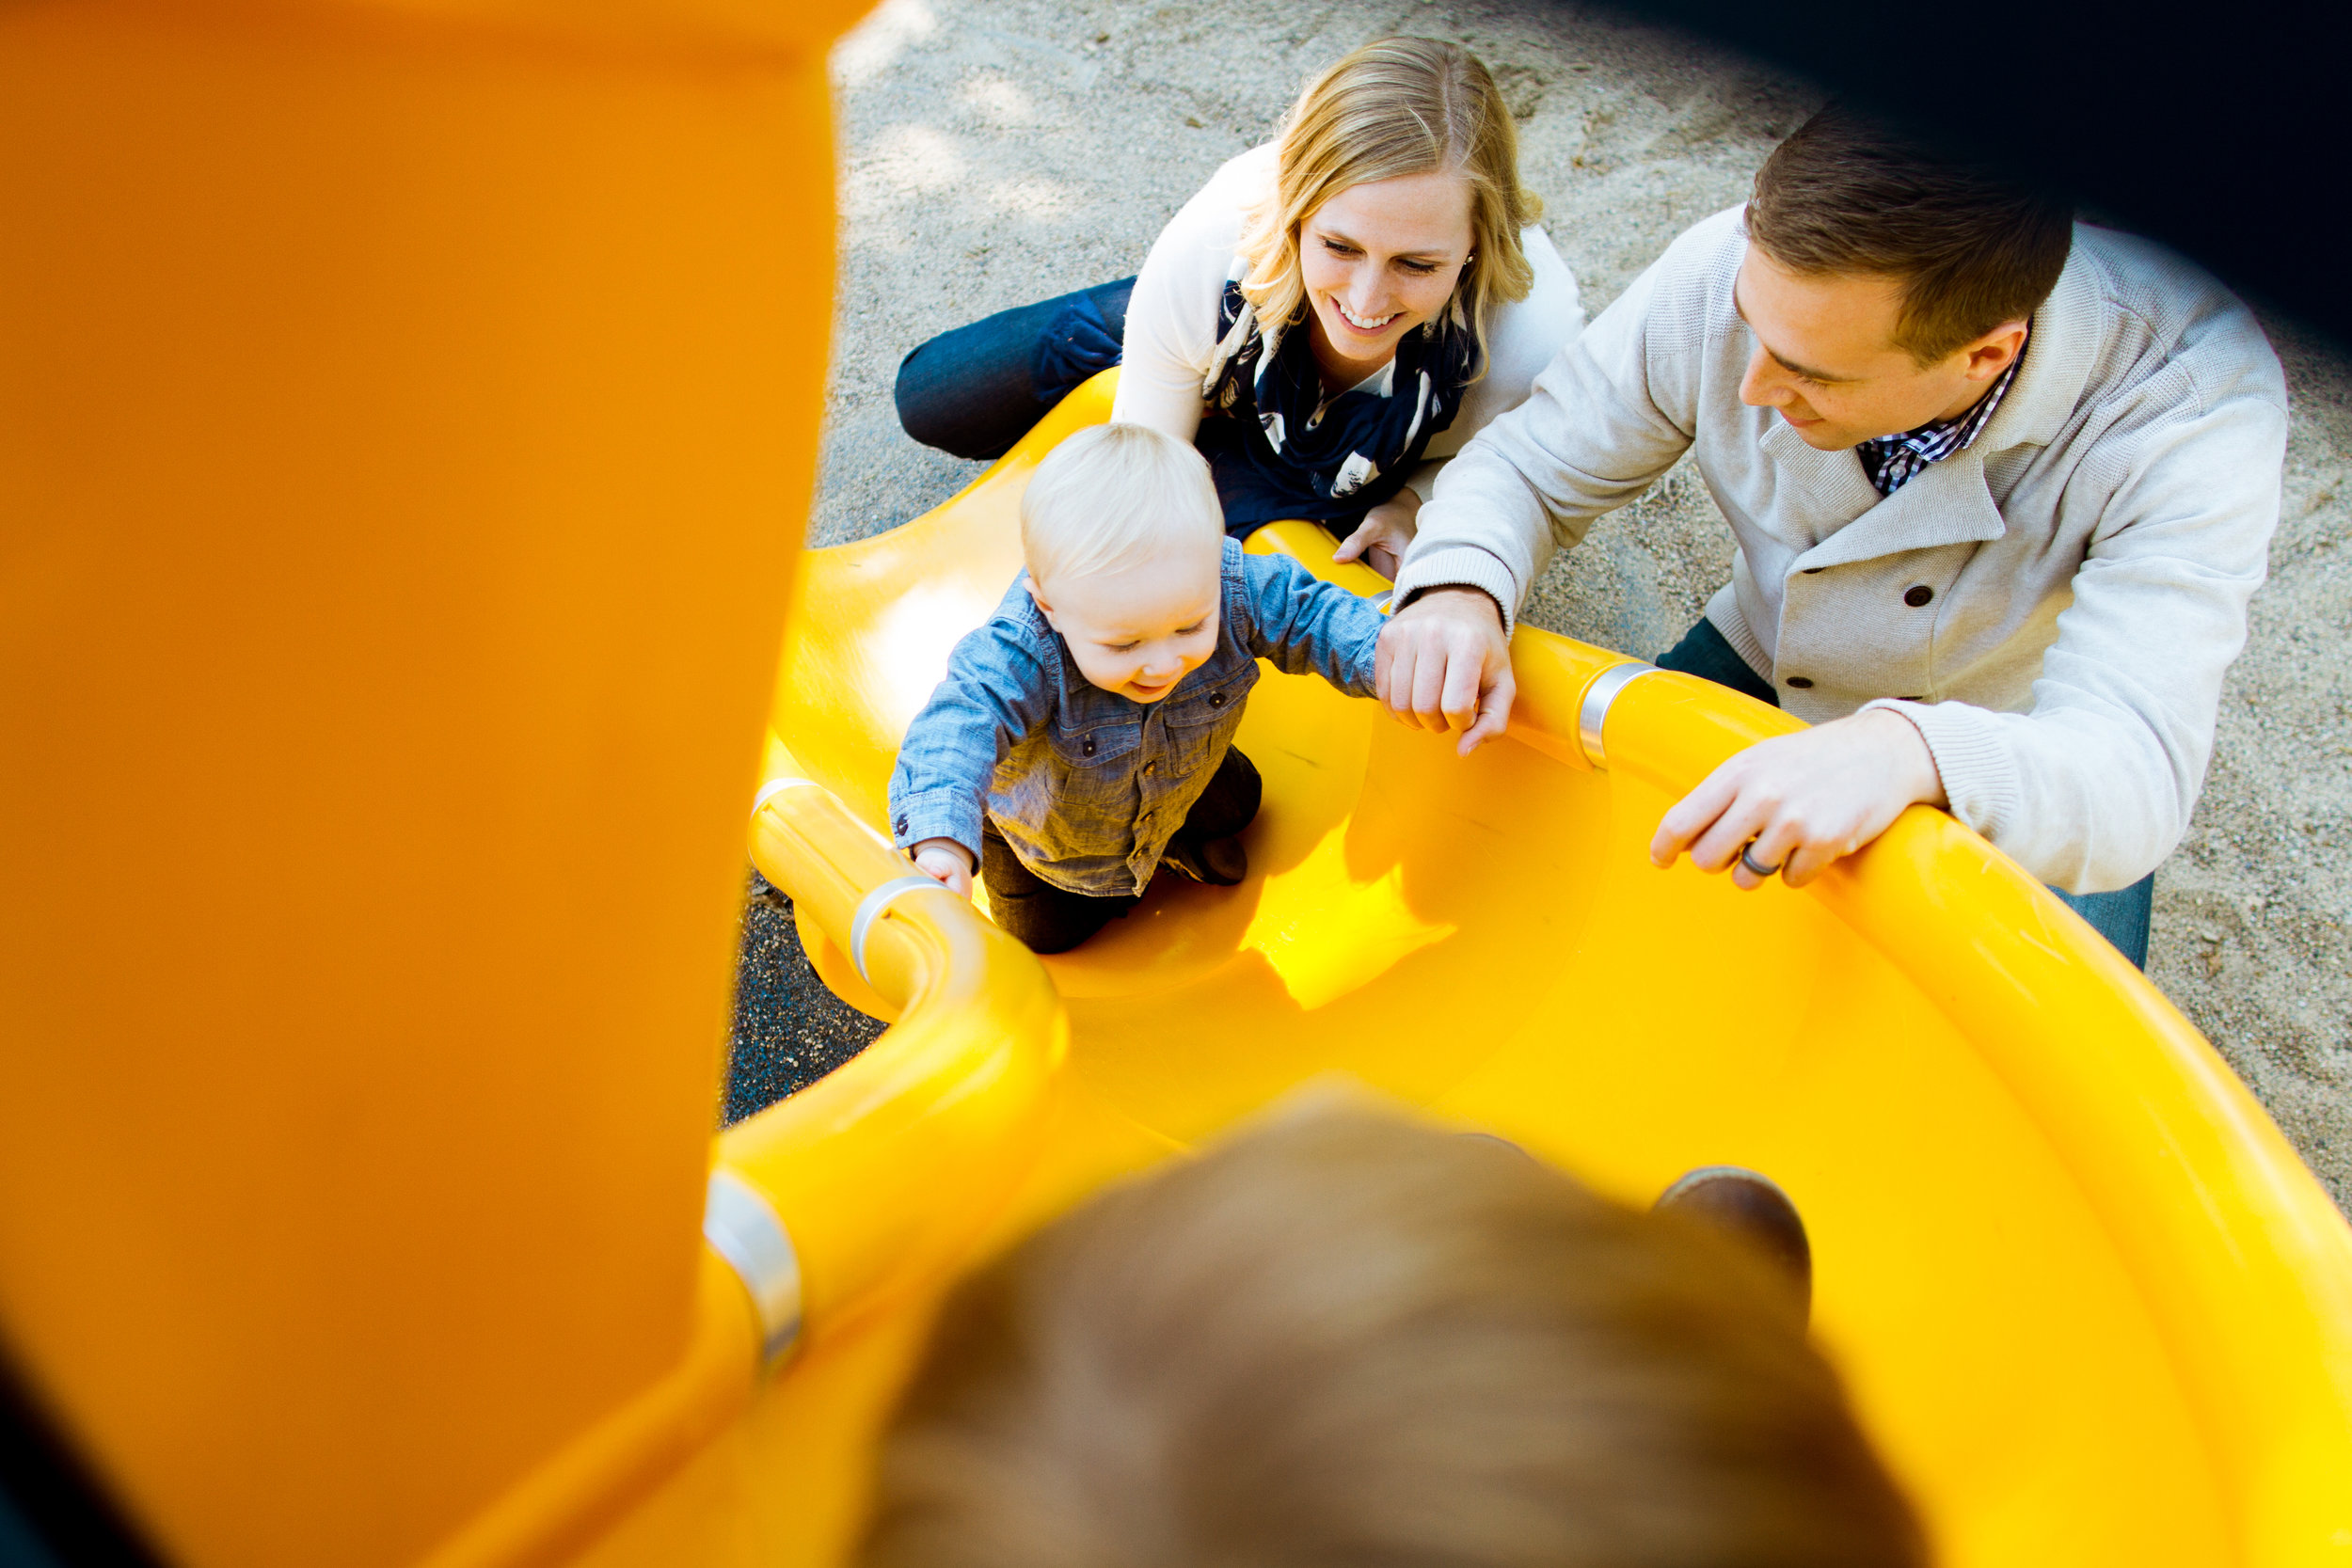 Family Photos on a Playground in Minneapolis, Minnesota